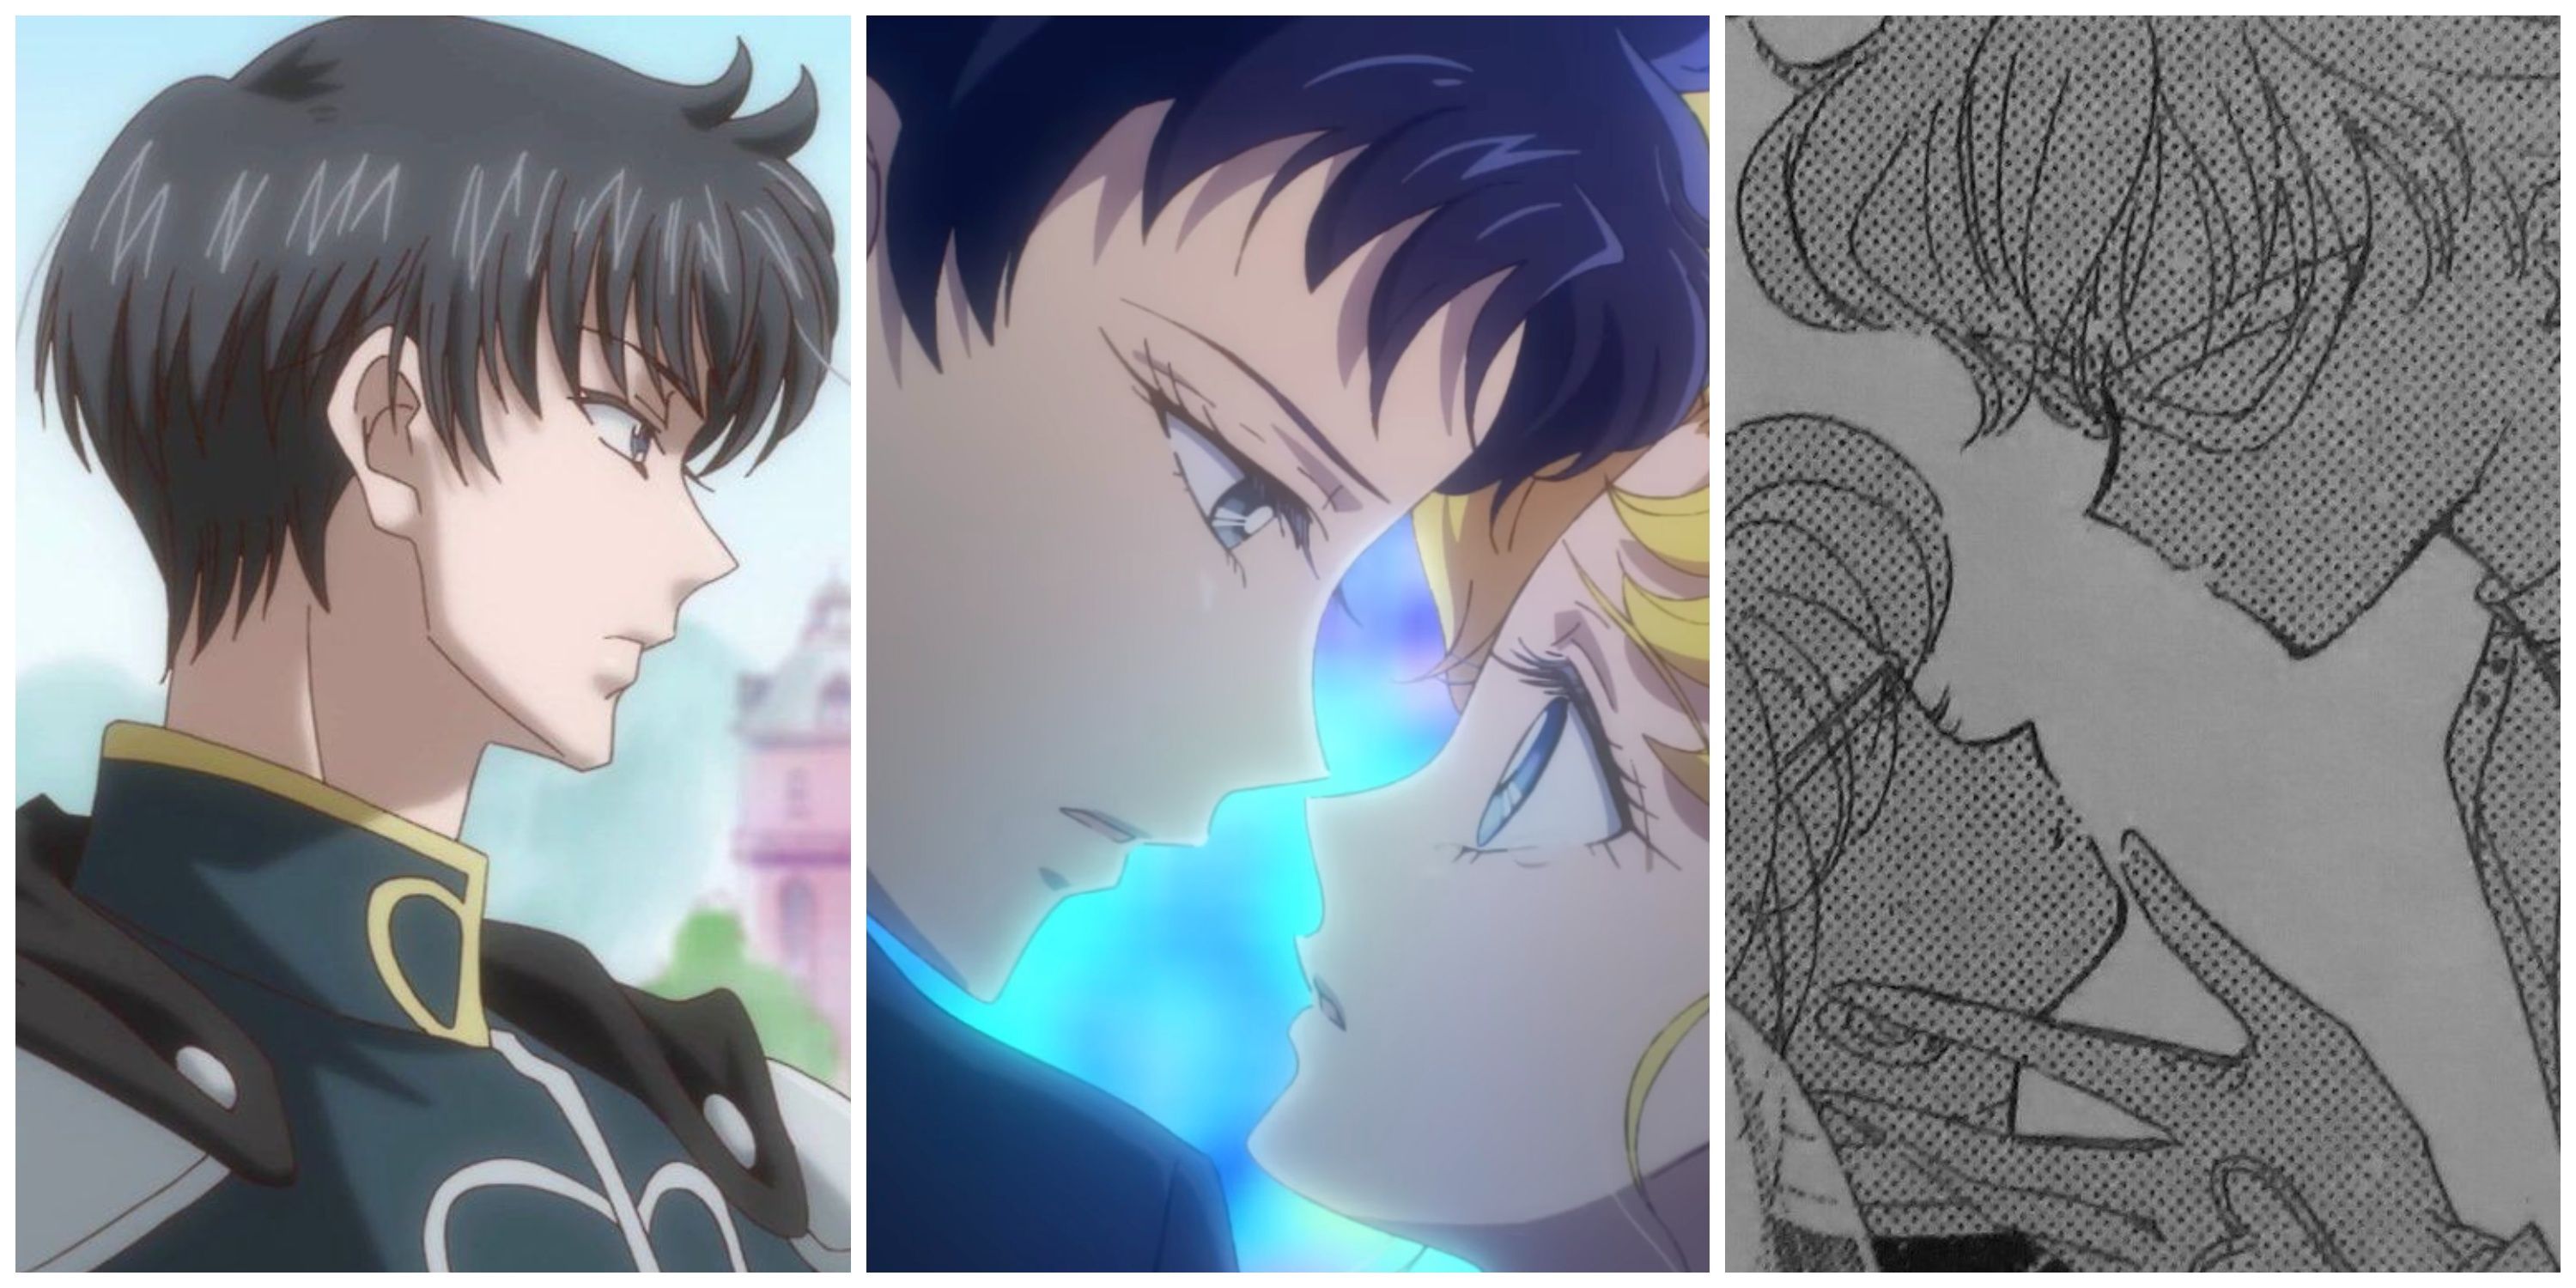 Split image, Endymion, Usagi and Seiya, and Sailor V and Adonis from Sailor Moon